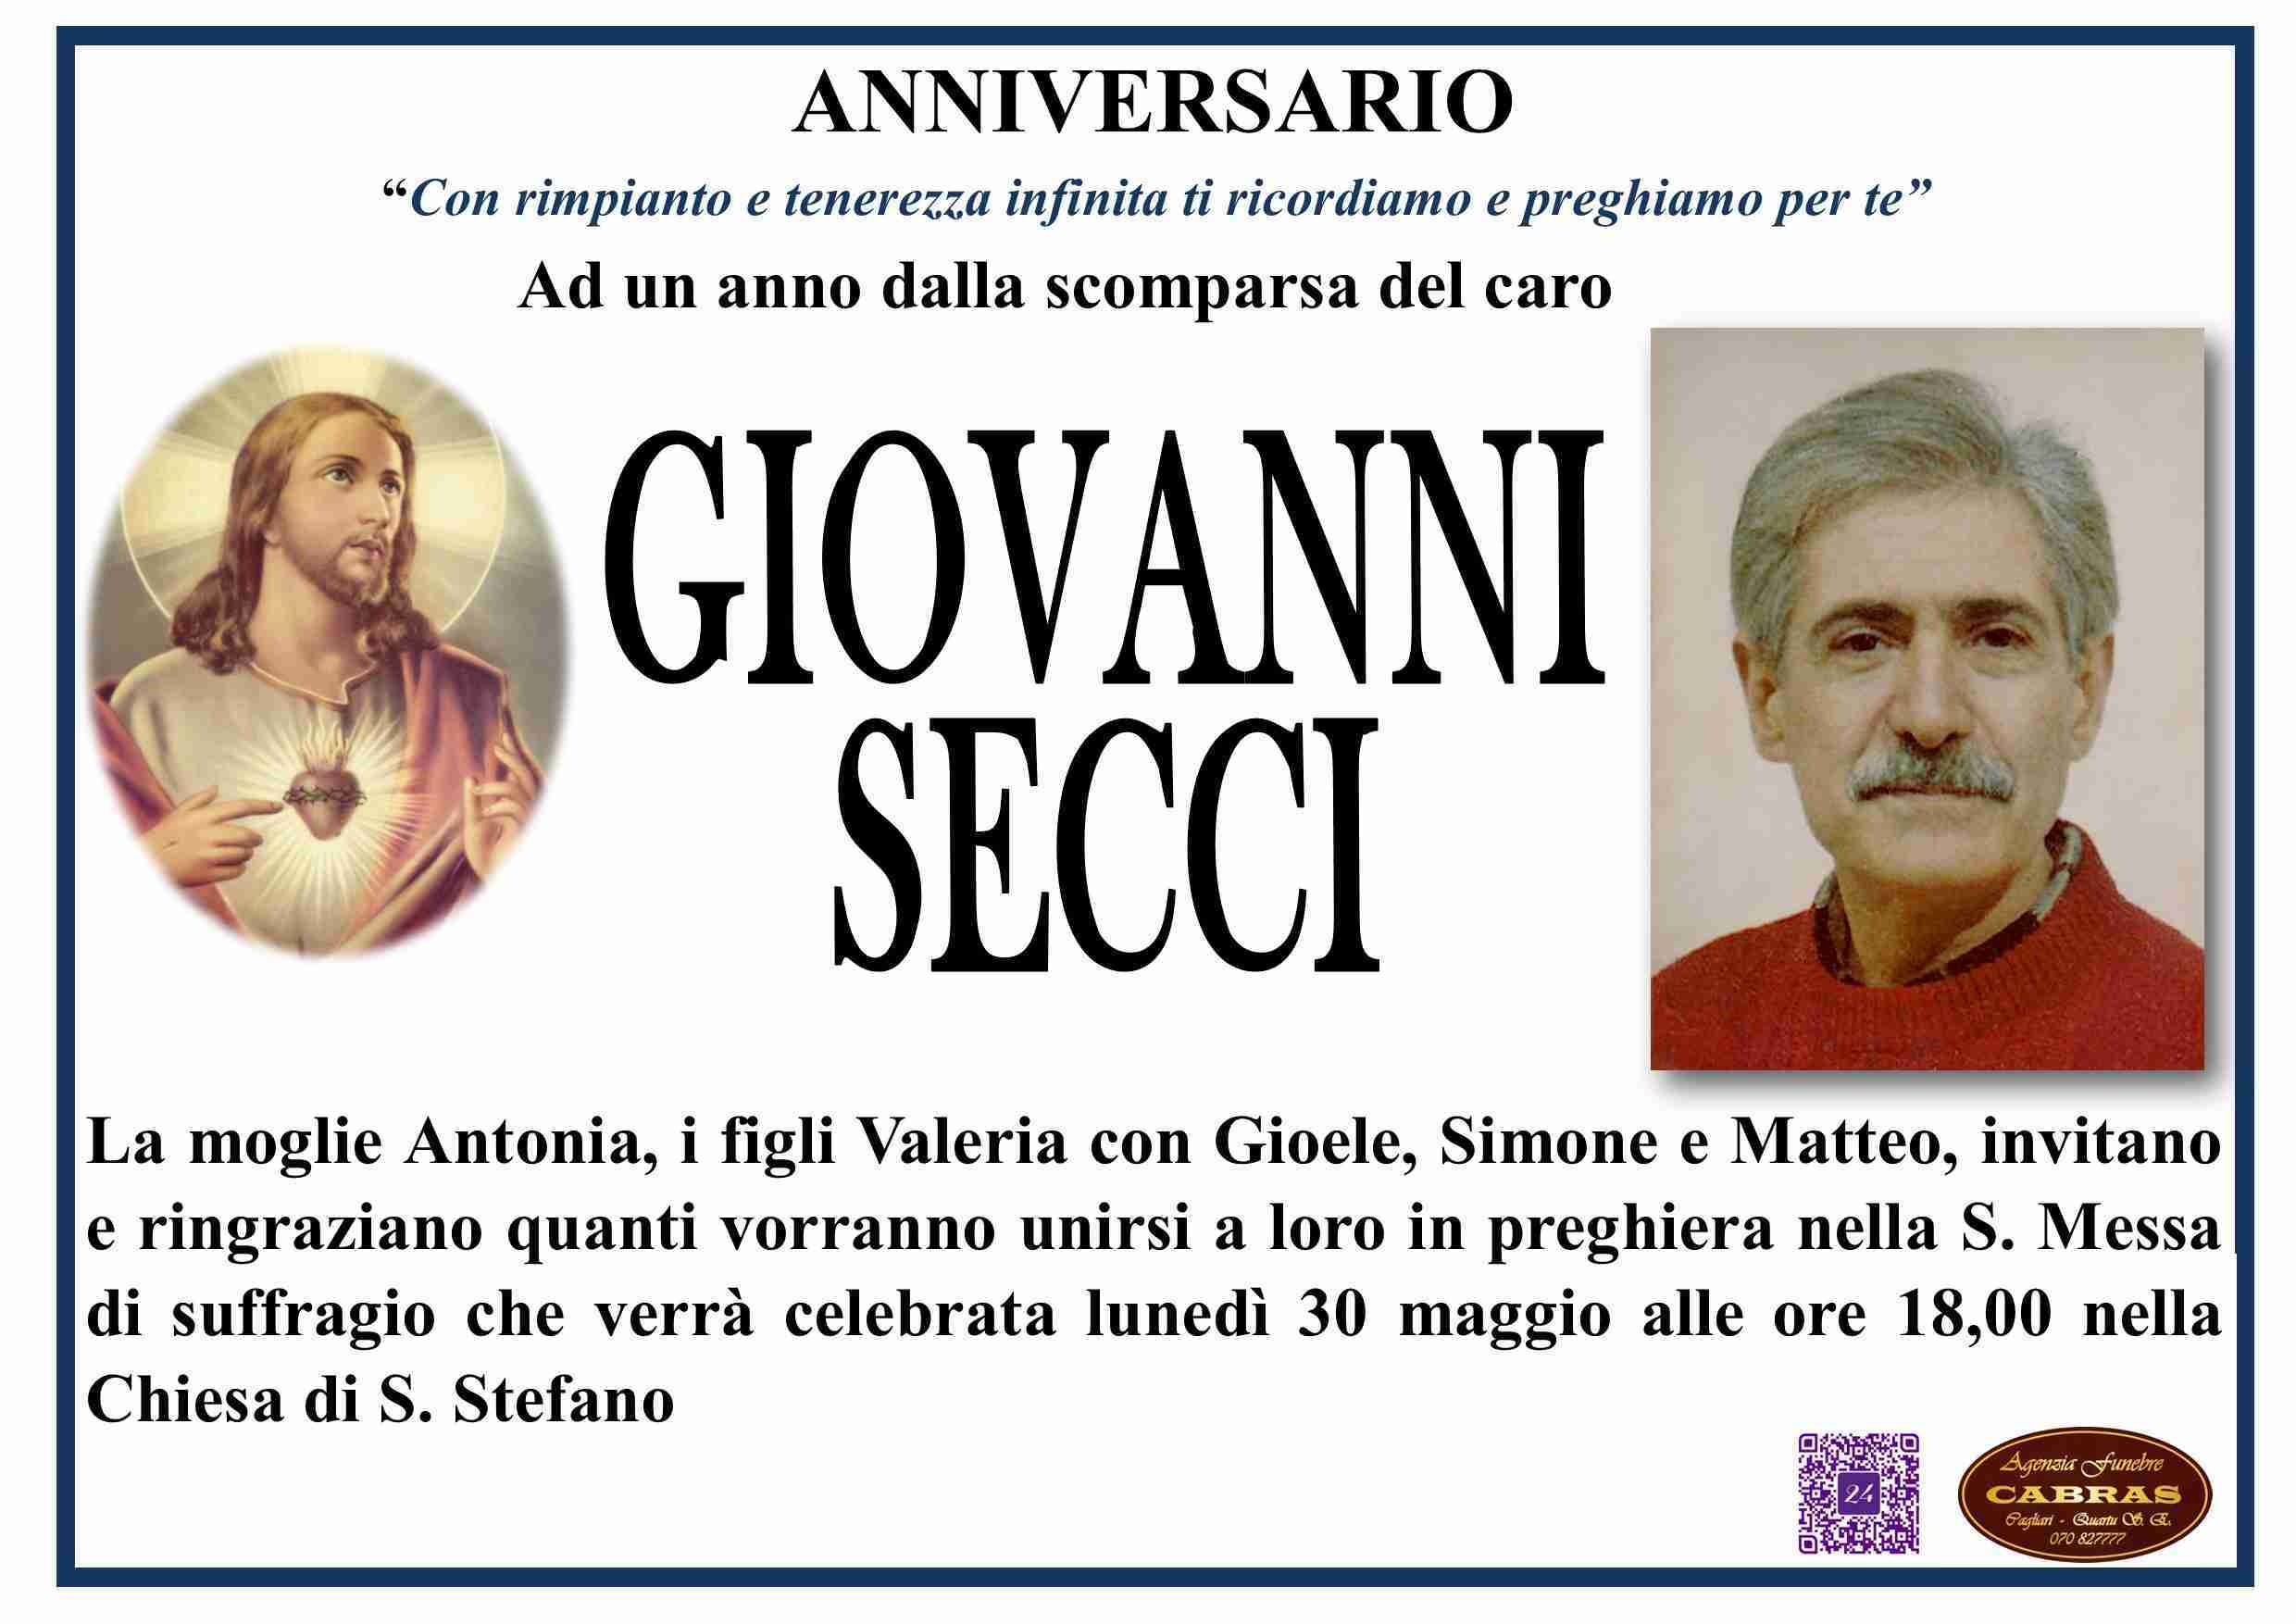 Giovanni Secci